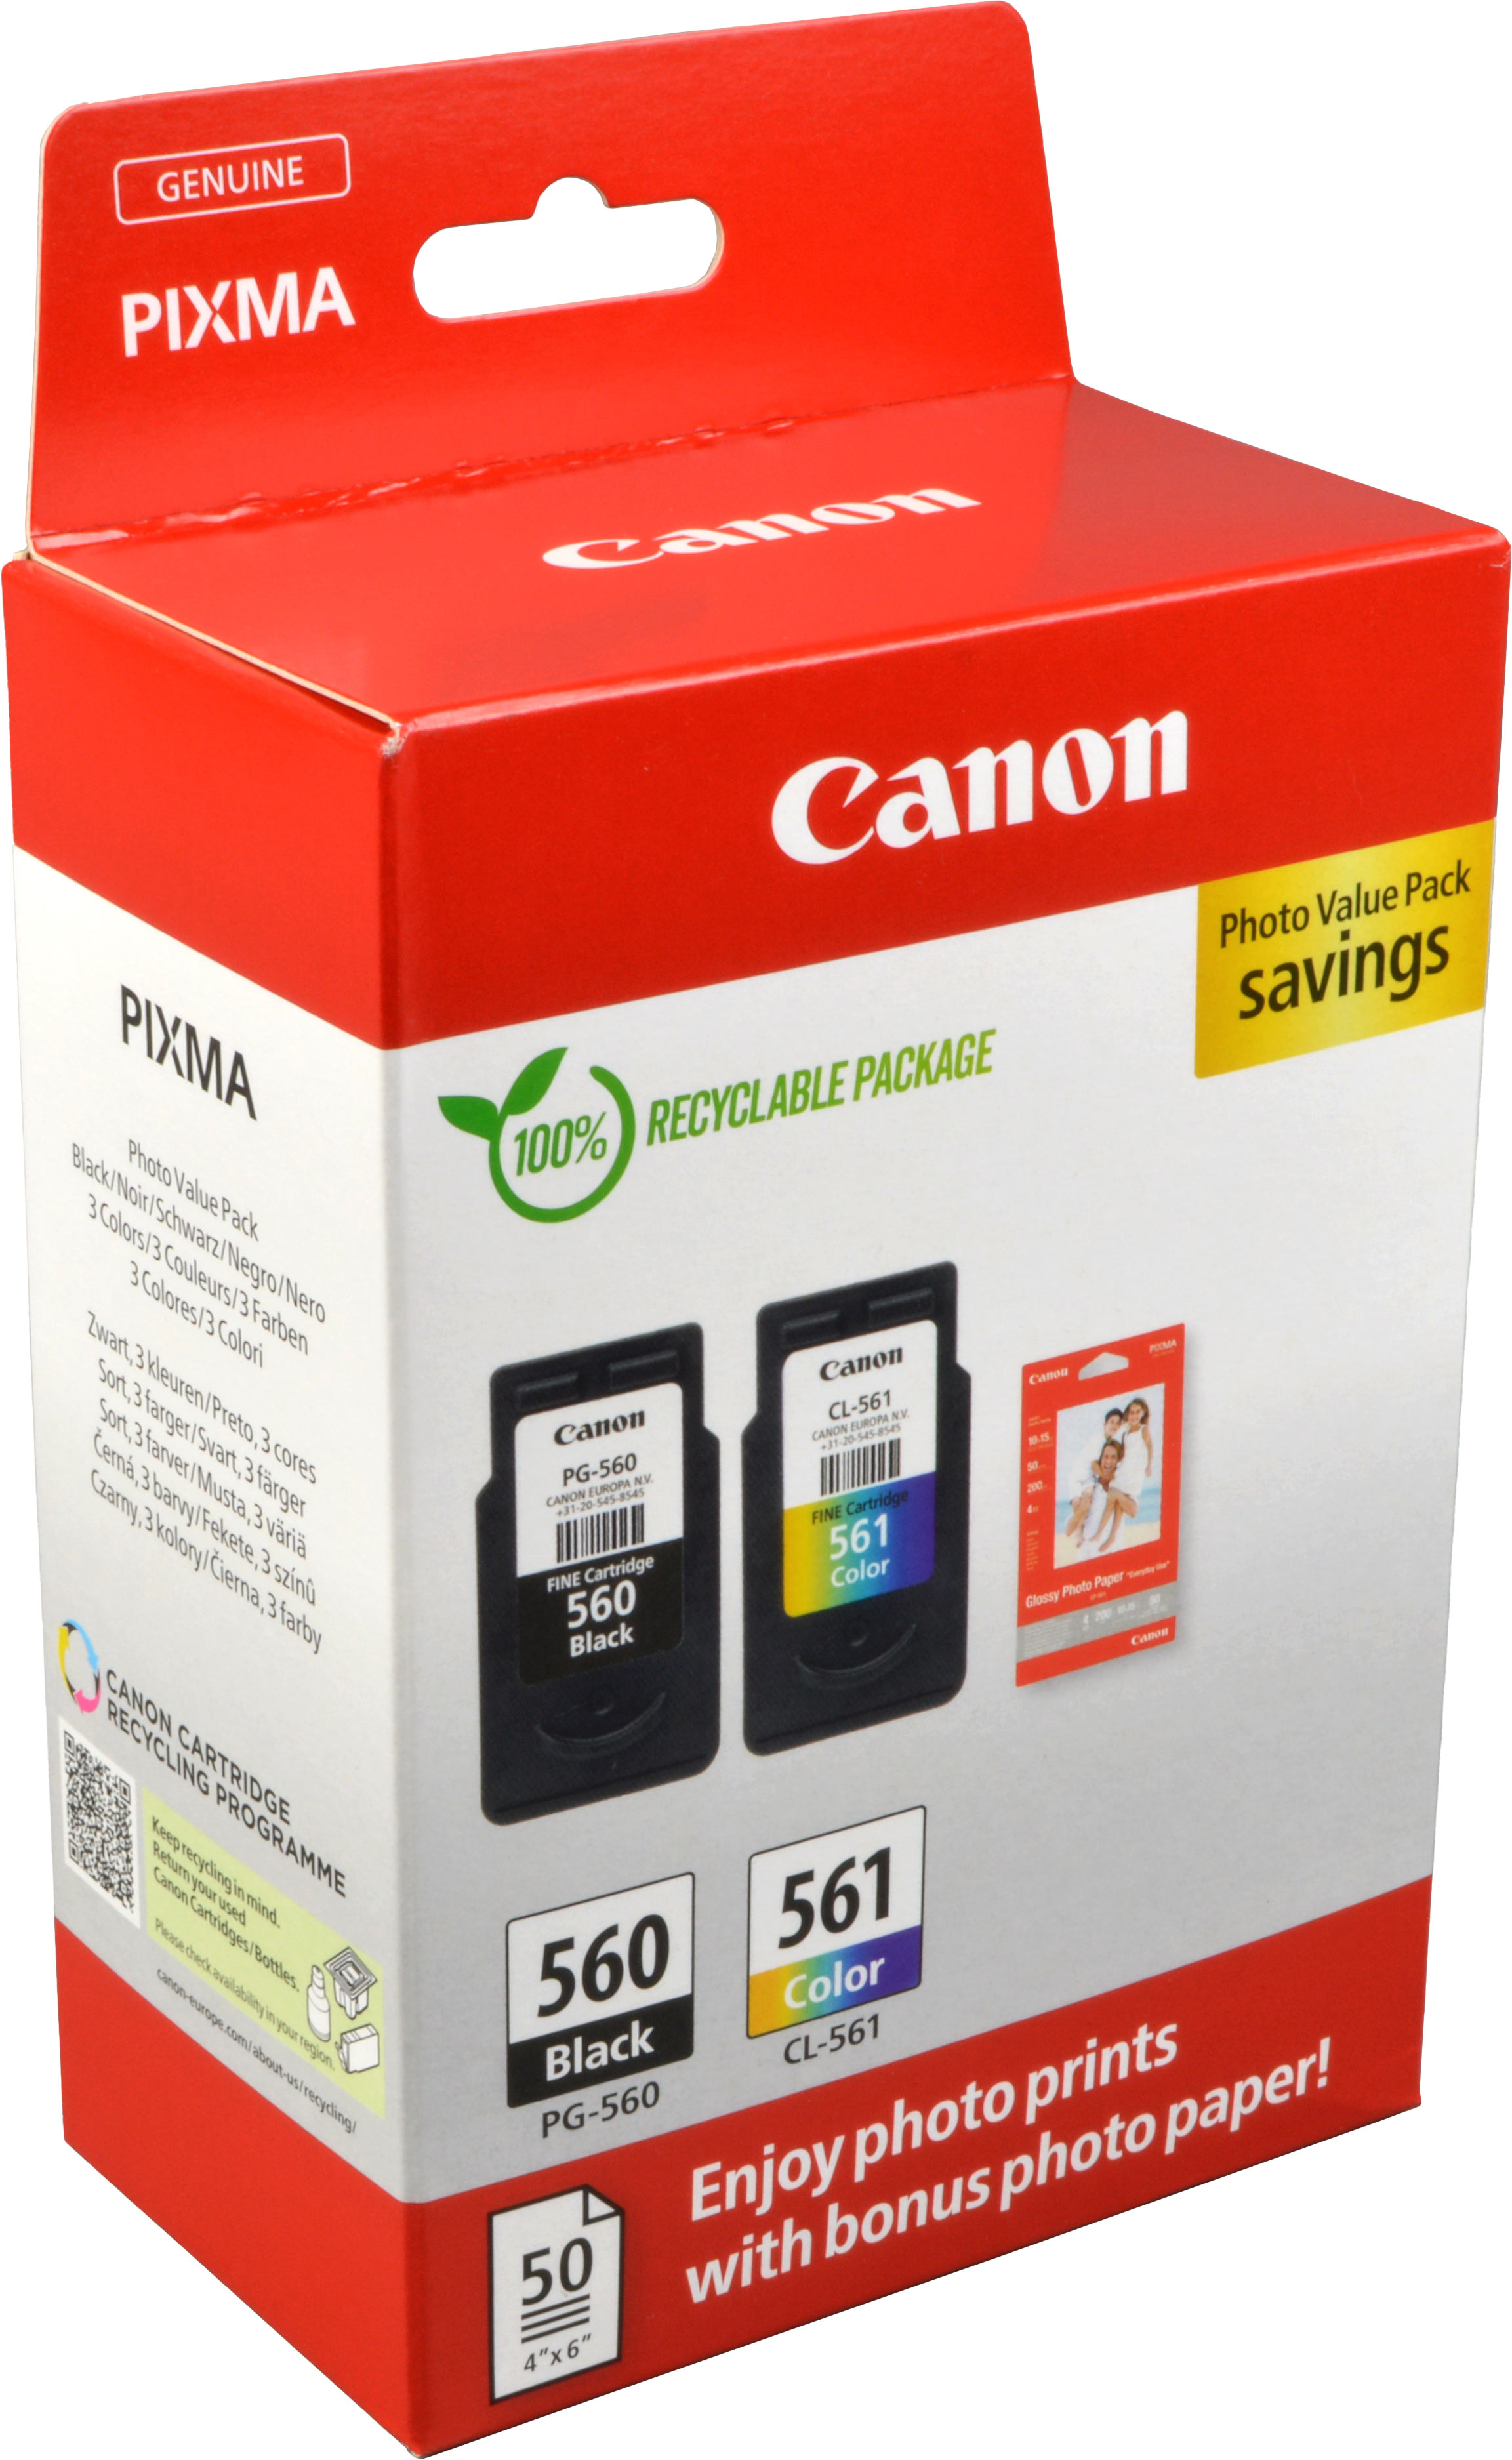 2 Canon Tinten 3713C008 Value Pack PG-560 + CL-561 4-farbig + Papier